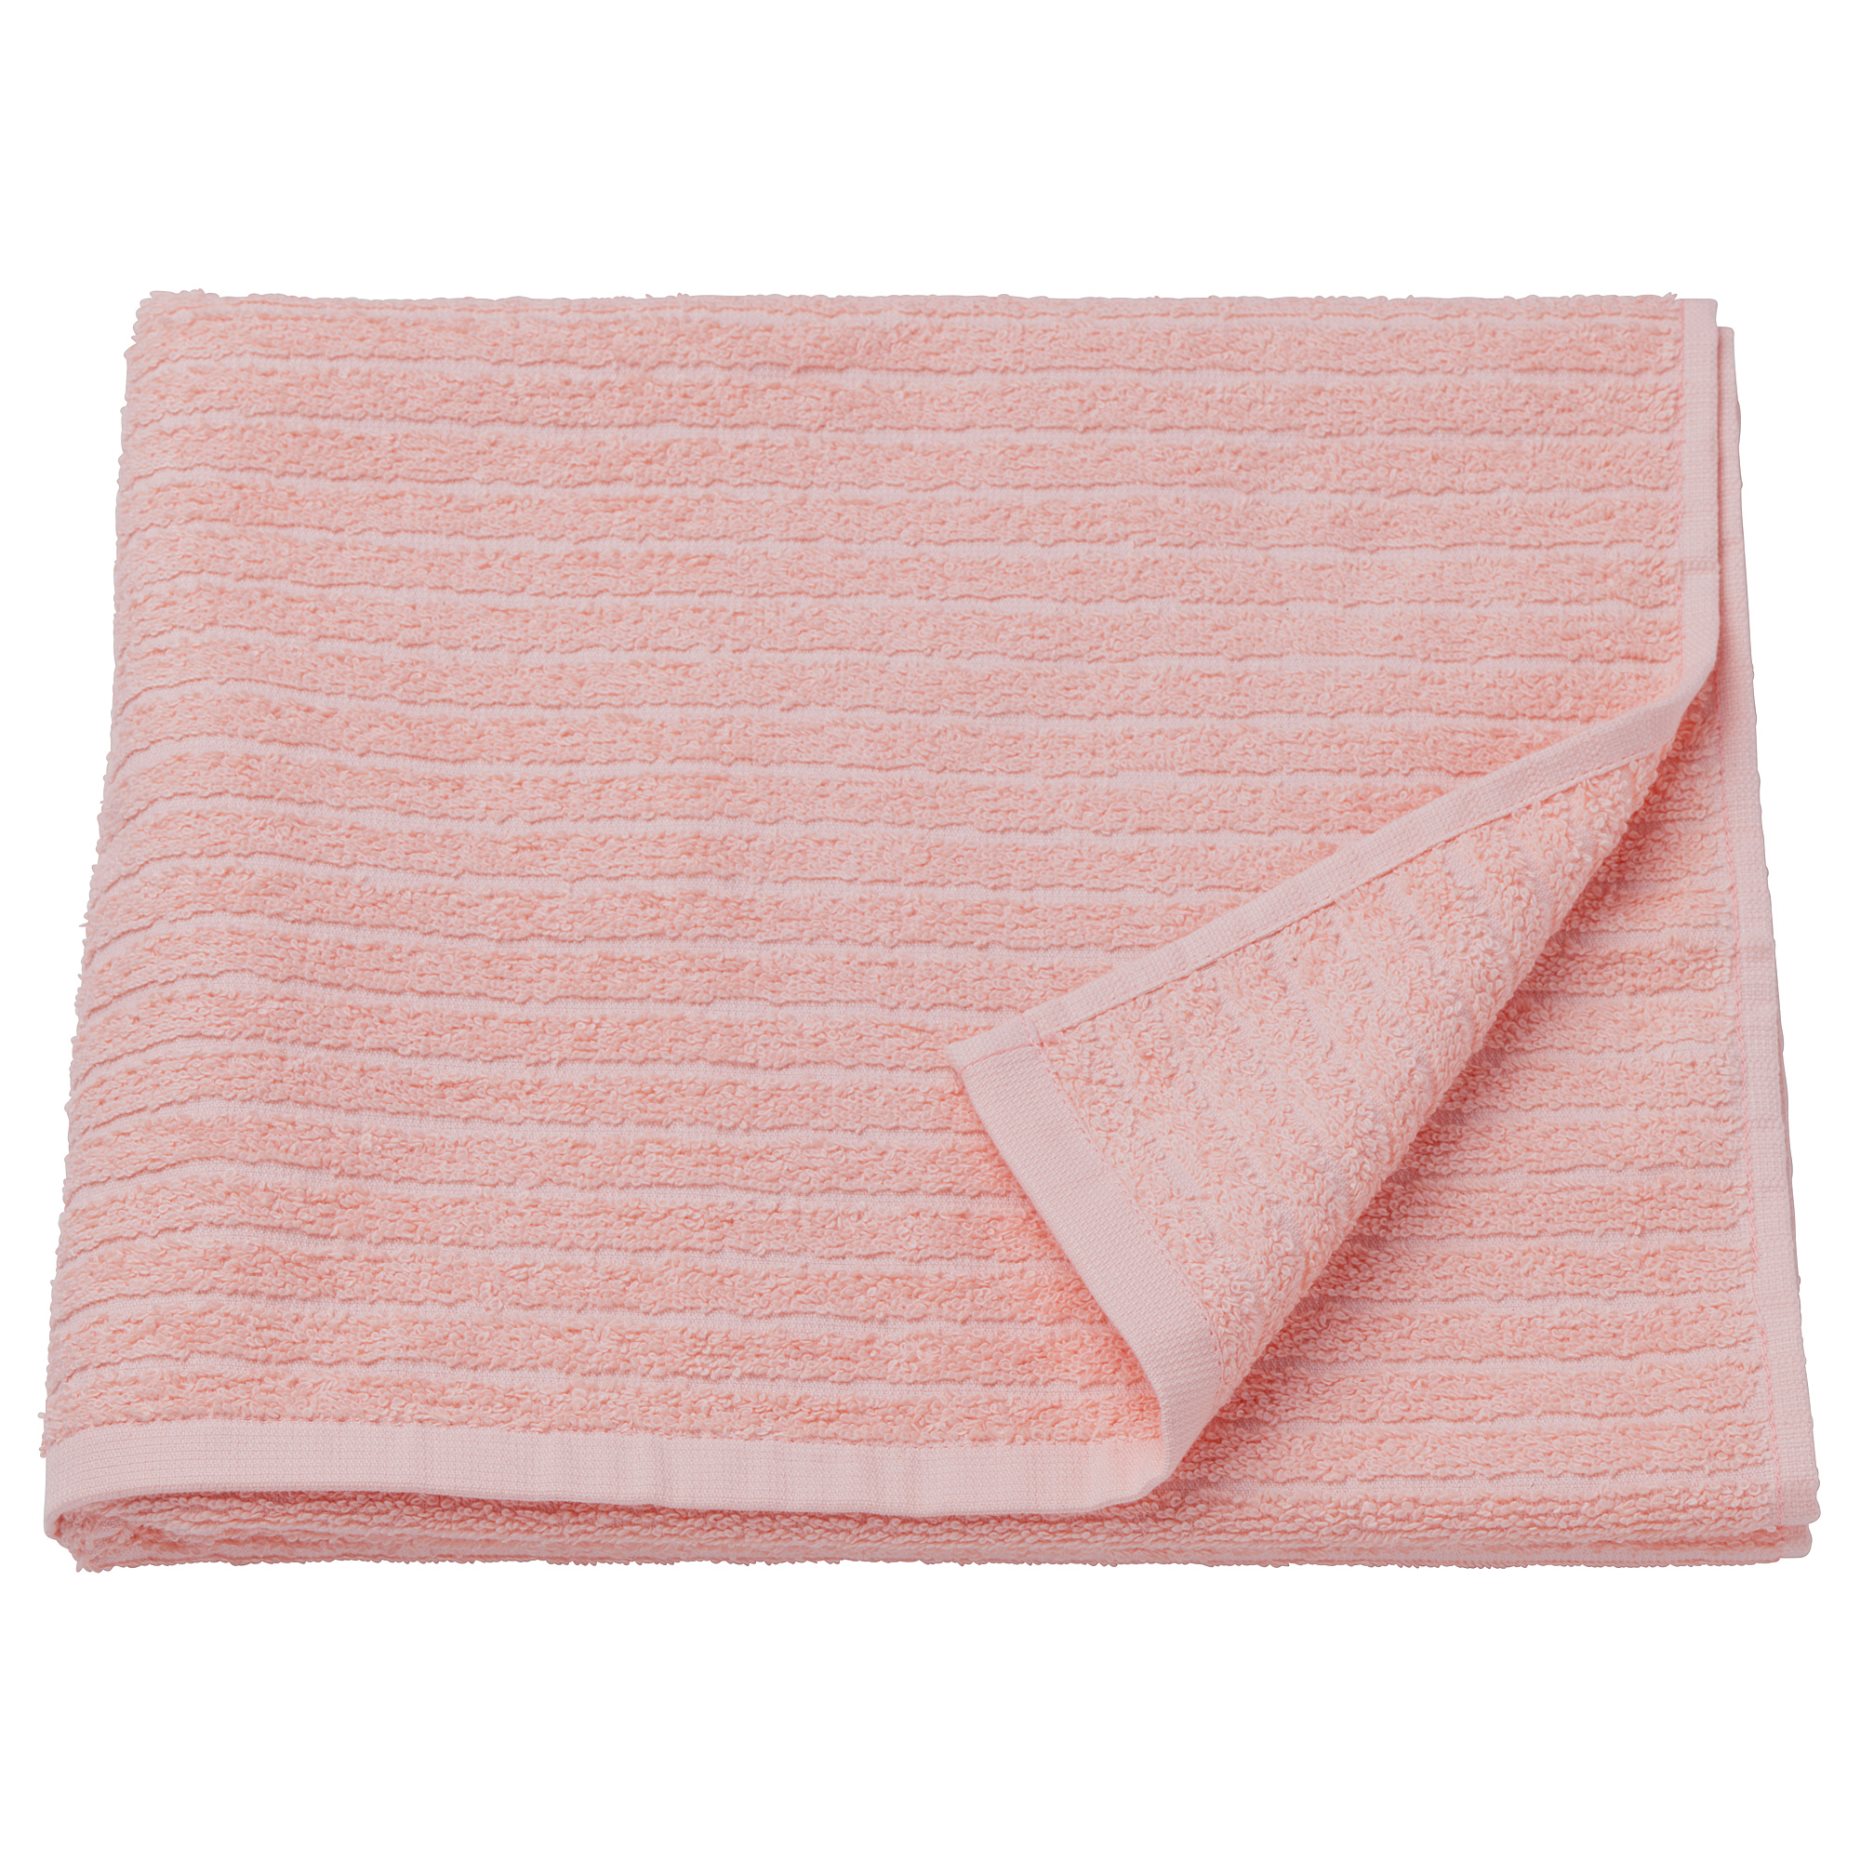 VÅGSJÖN, bath towel, 70x140 cm, 604.880.07